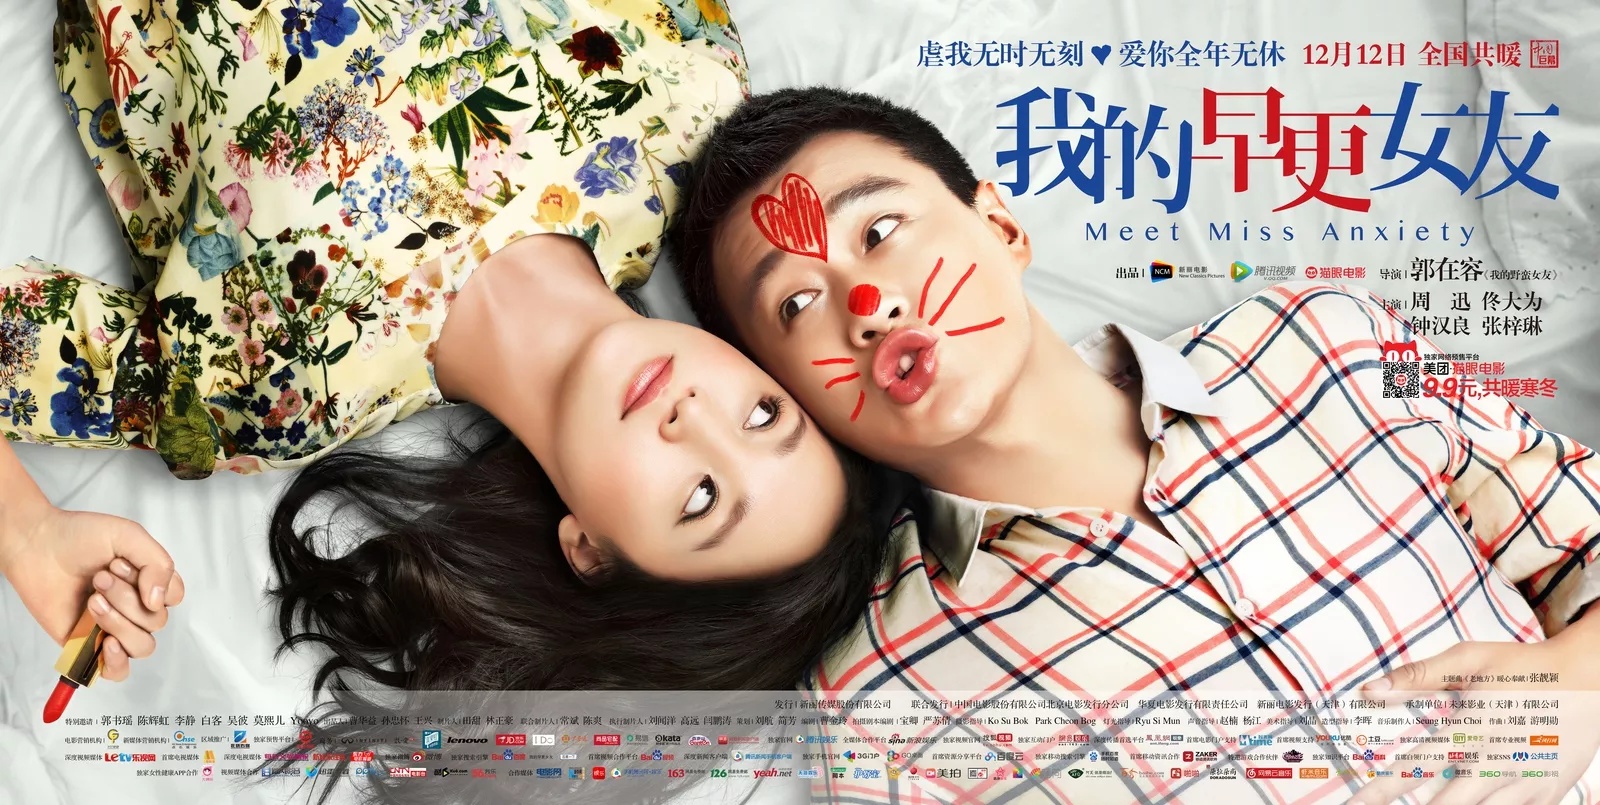 Phim hoặc của Chung Hán Lương đóng: quý khách hàng gái hồi xuân của tôi - Meet miss anxiety (2014)